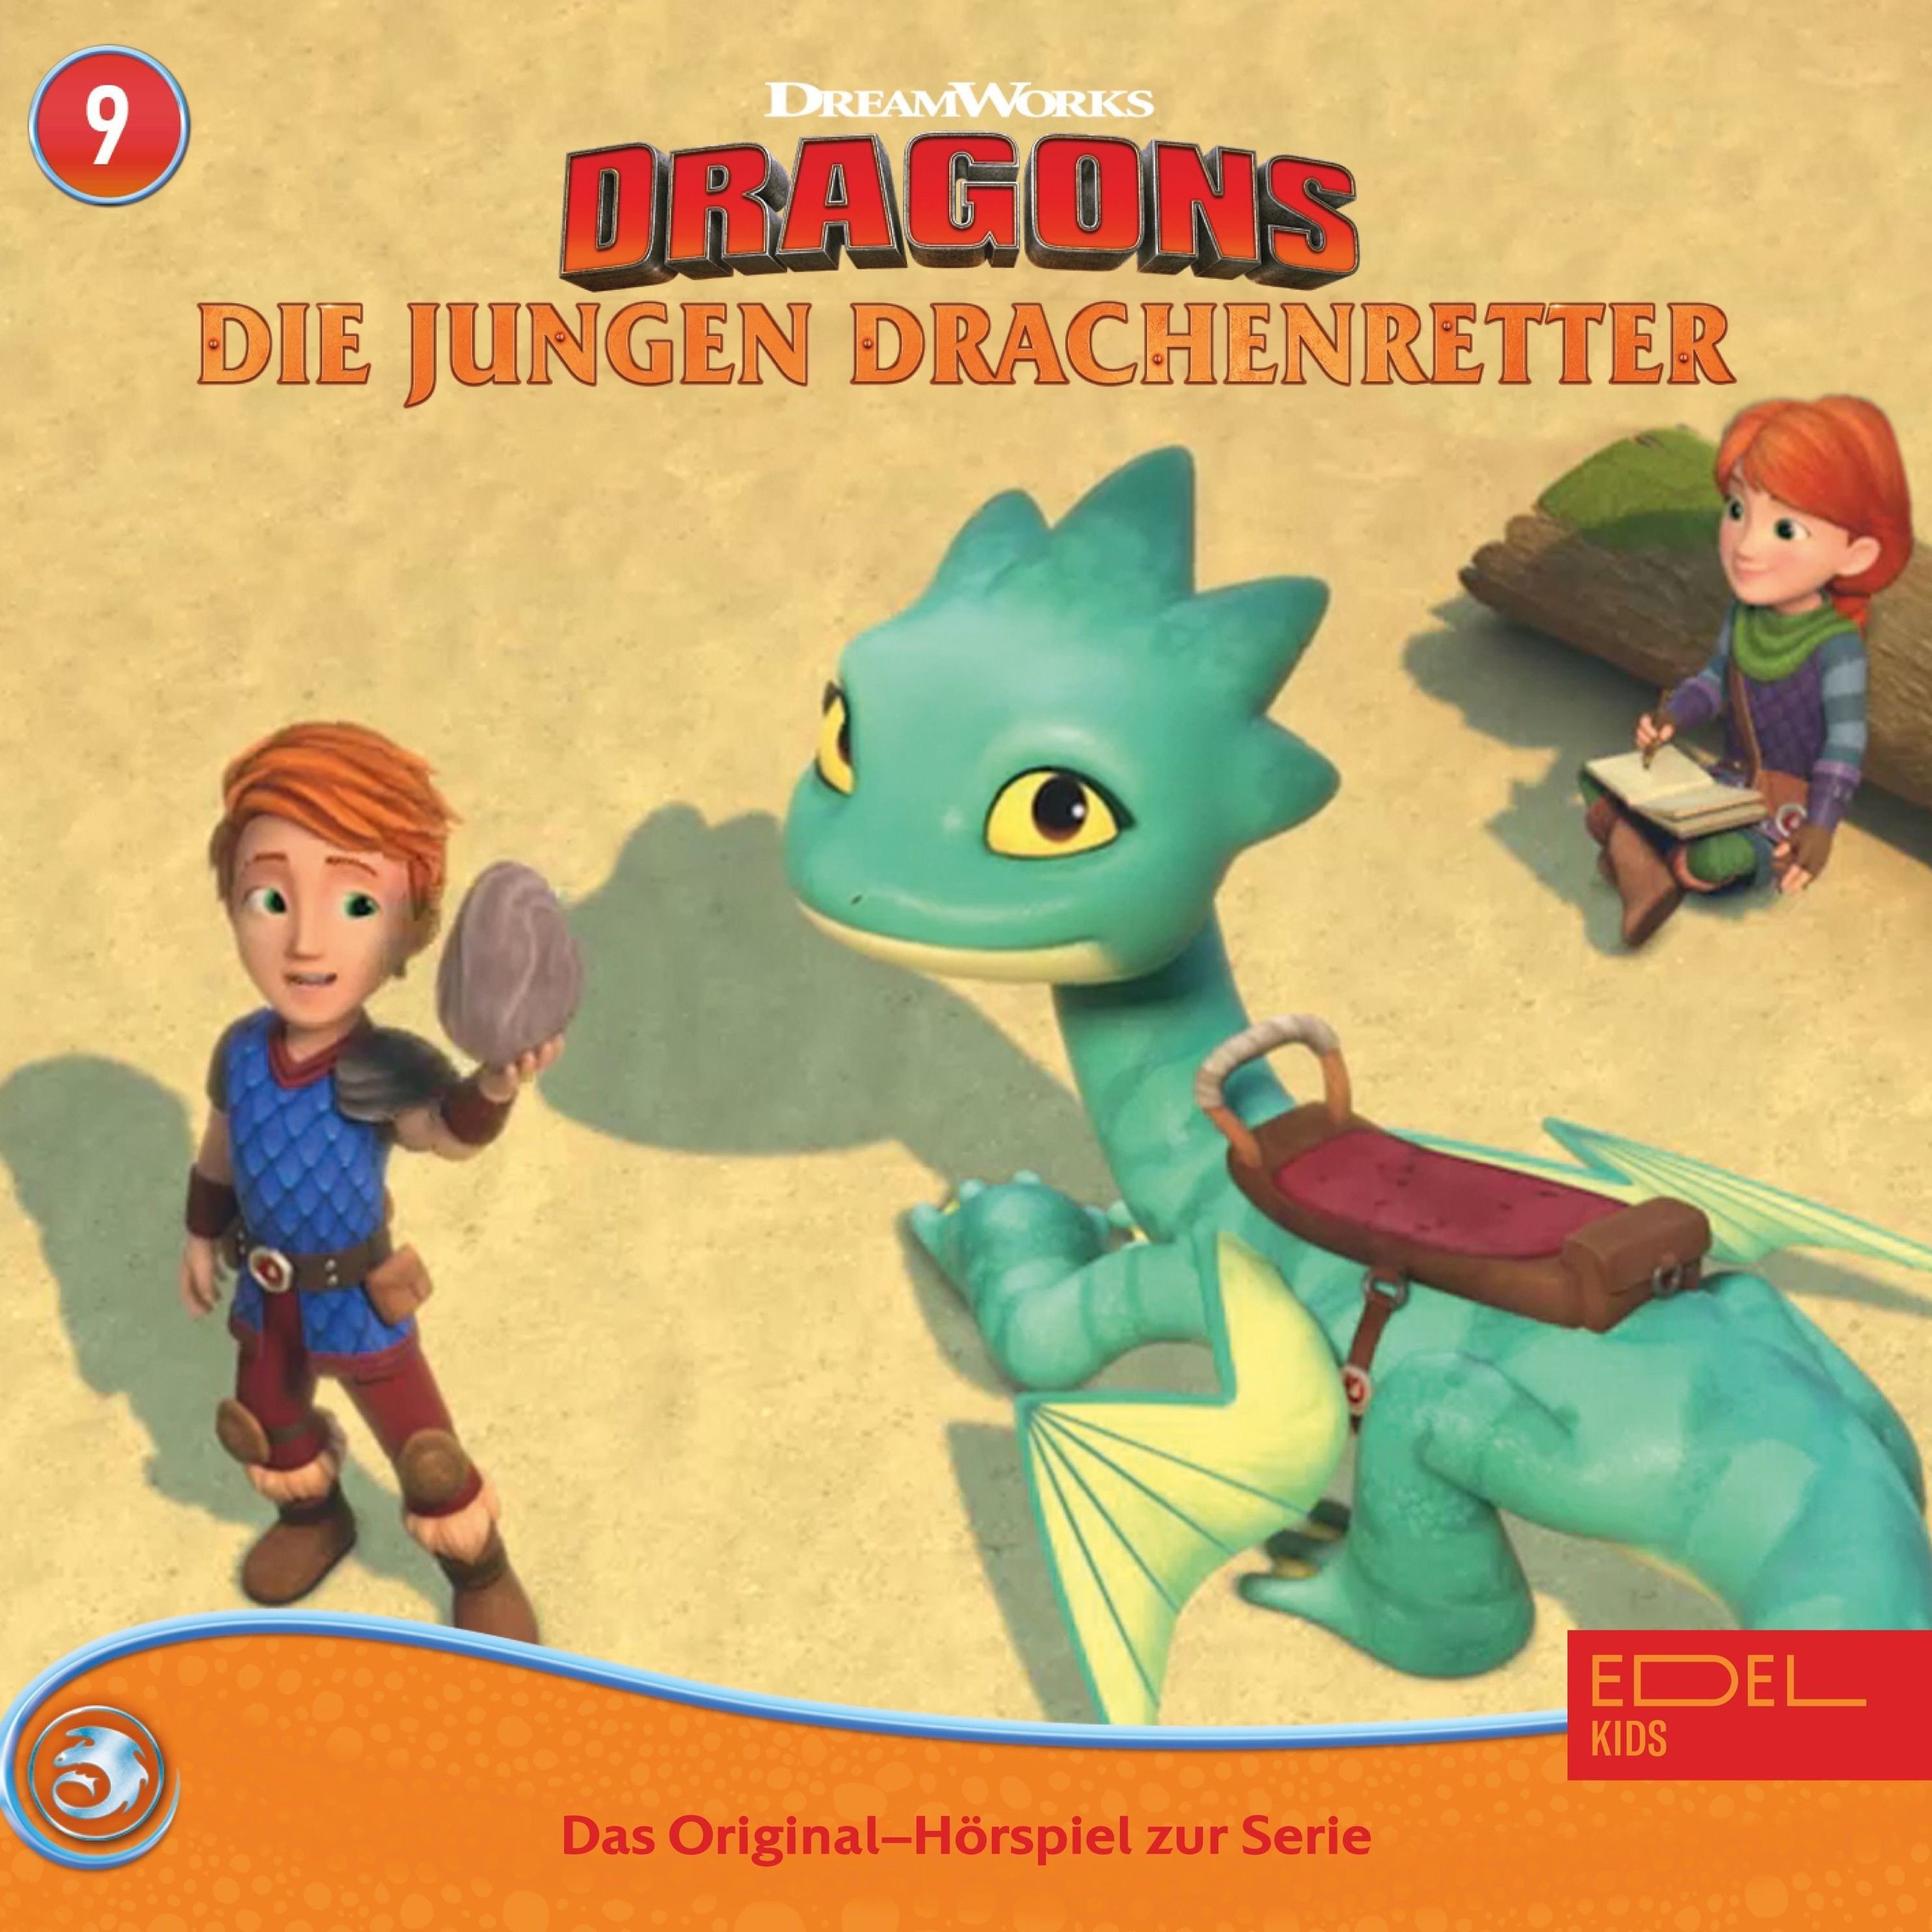 https://i.weltbild.de/p/dragons-die-jungen-drachenretter-9-folge-9-die-mecha-351800965.jpg?v=1&wp=_max